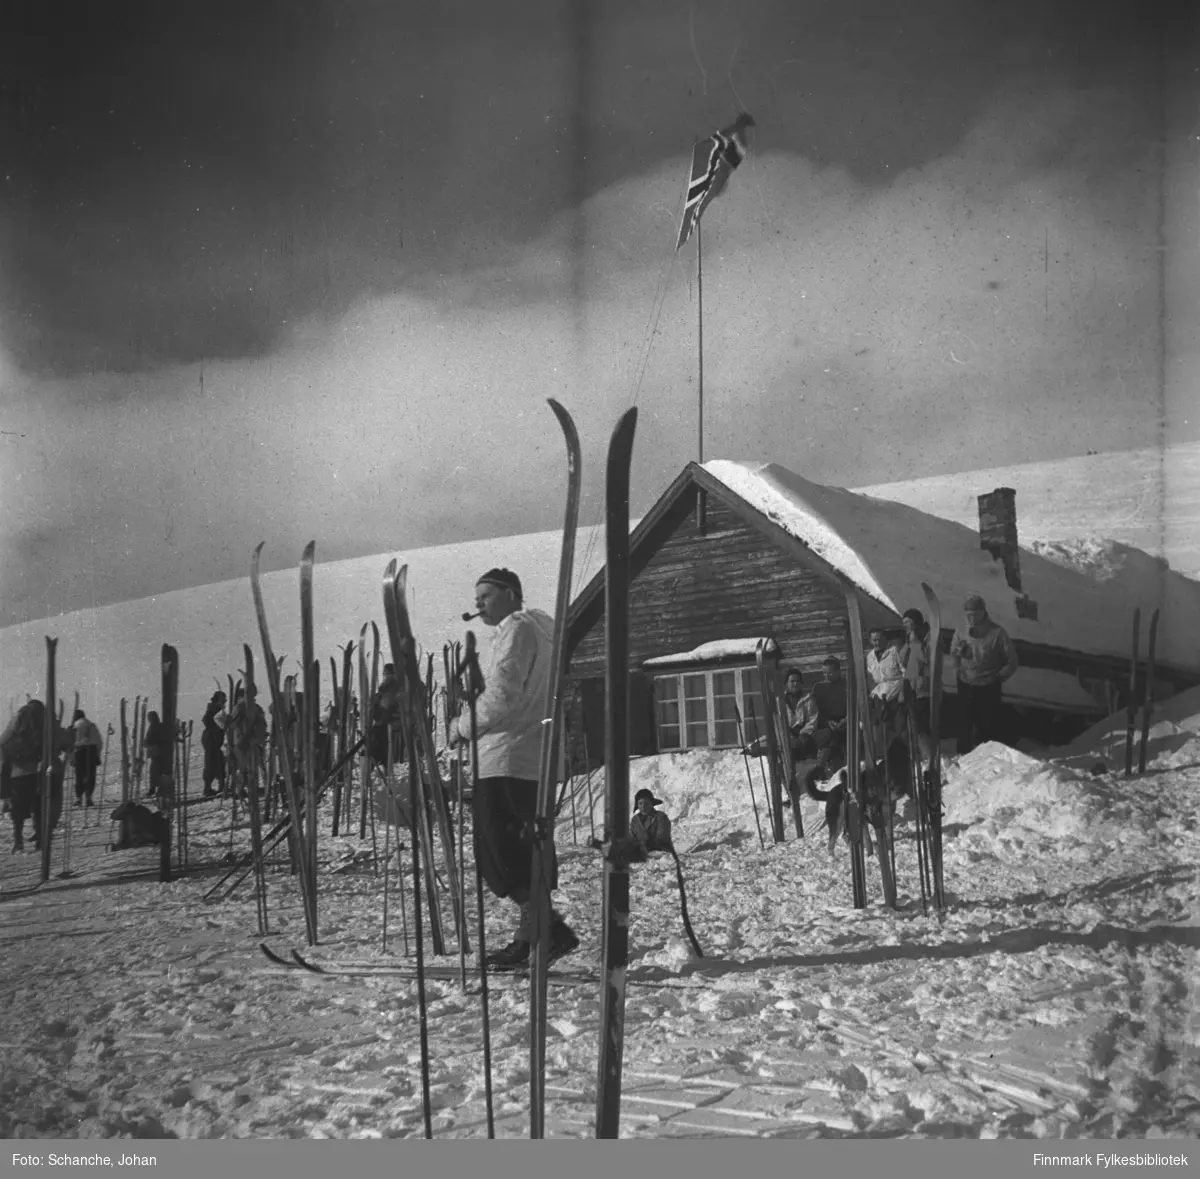 Vinikka skihytte fotografert en solig vårdag i 1946.  Flere skier står oppstillt på snøen rund hytta. Flaggen er heist opp og det går folk i anorakk bland skiene. Fremst på bildet står en mann og røyker pipa.